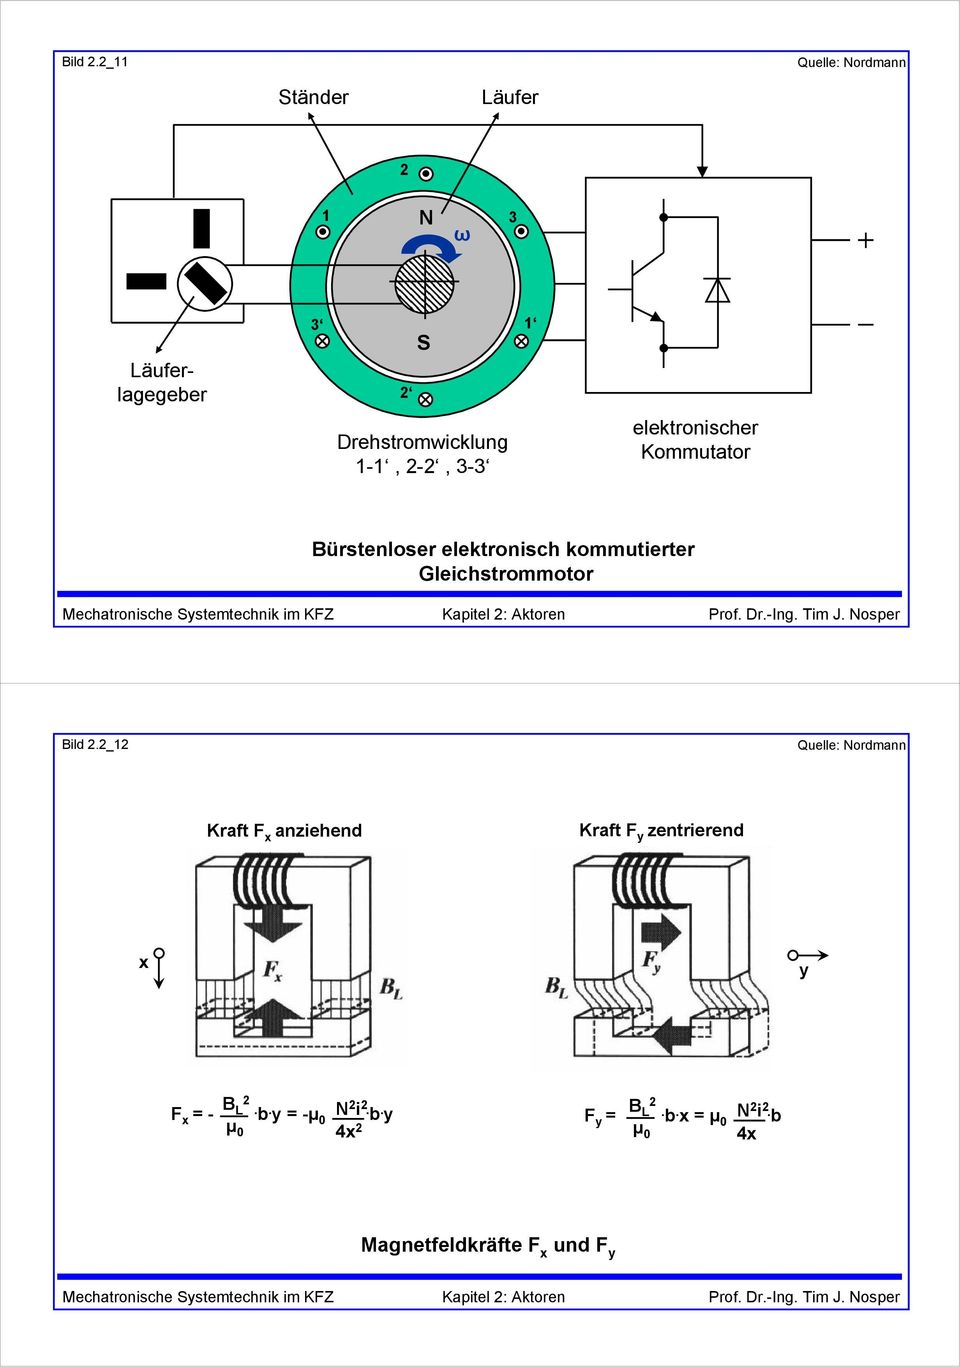 2-2, 3-3 elektronischer Kommutator Bürstenloser elektronisch kommutierter Gleichstrommotor